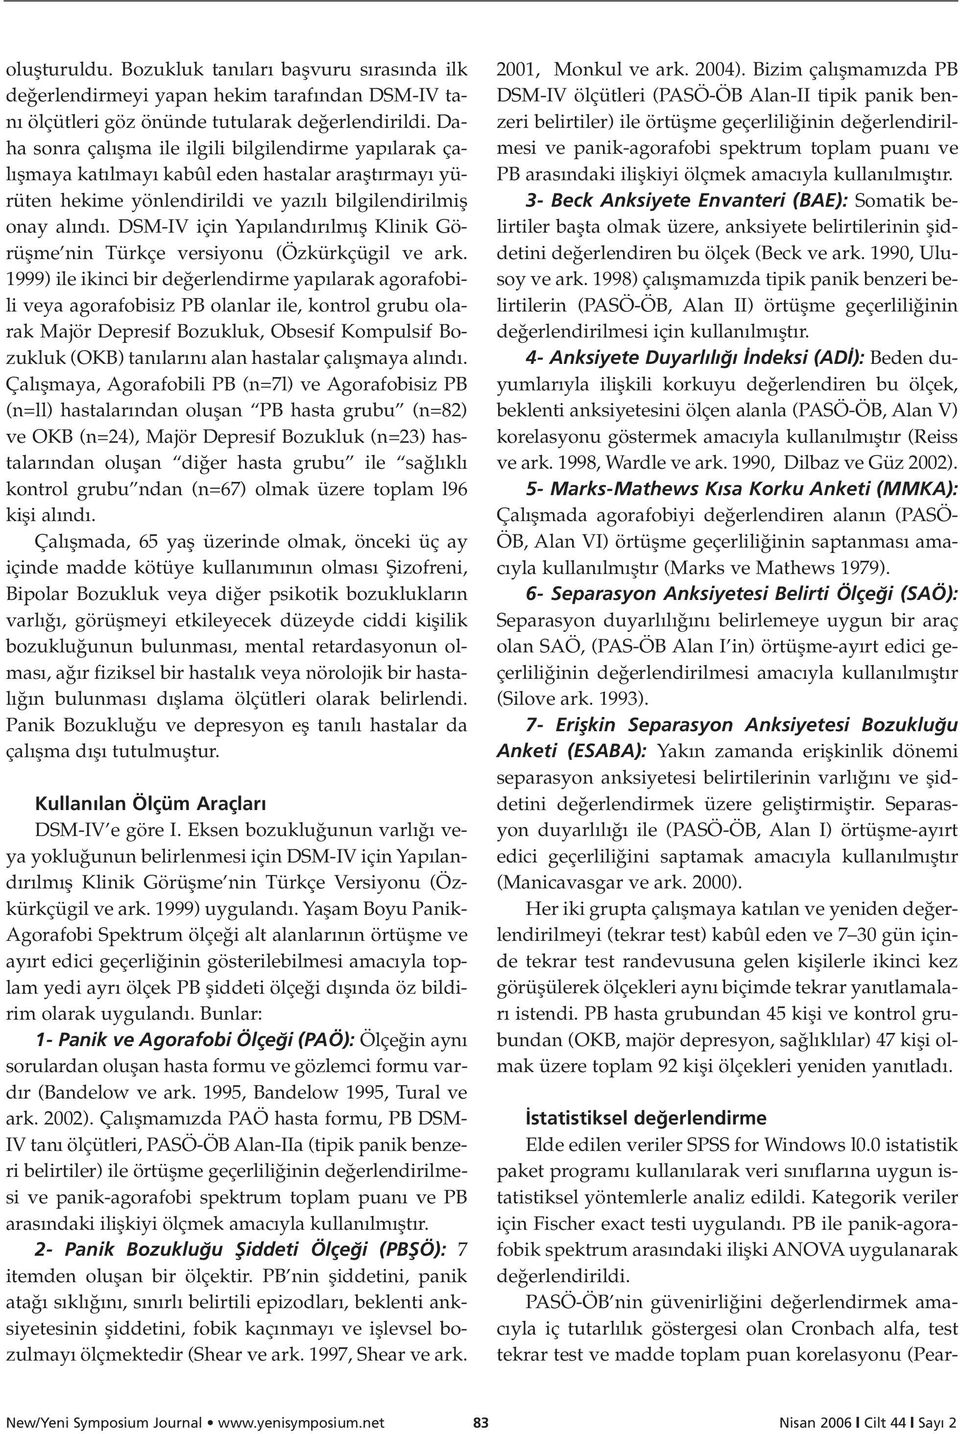 DSM-IV için Yap land r lm fl Klinik Görüflme nin Türkçe versiyonu (Özkürkçügil ve ark.